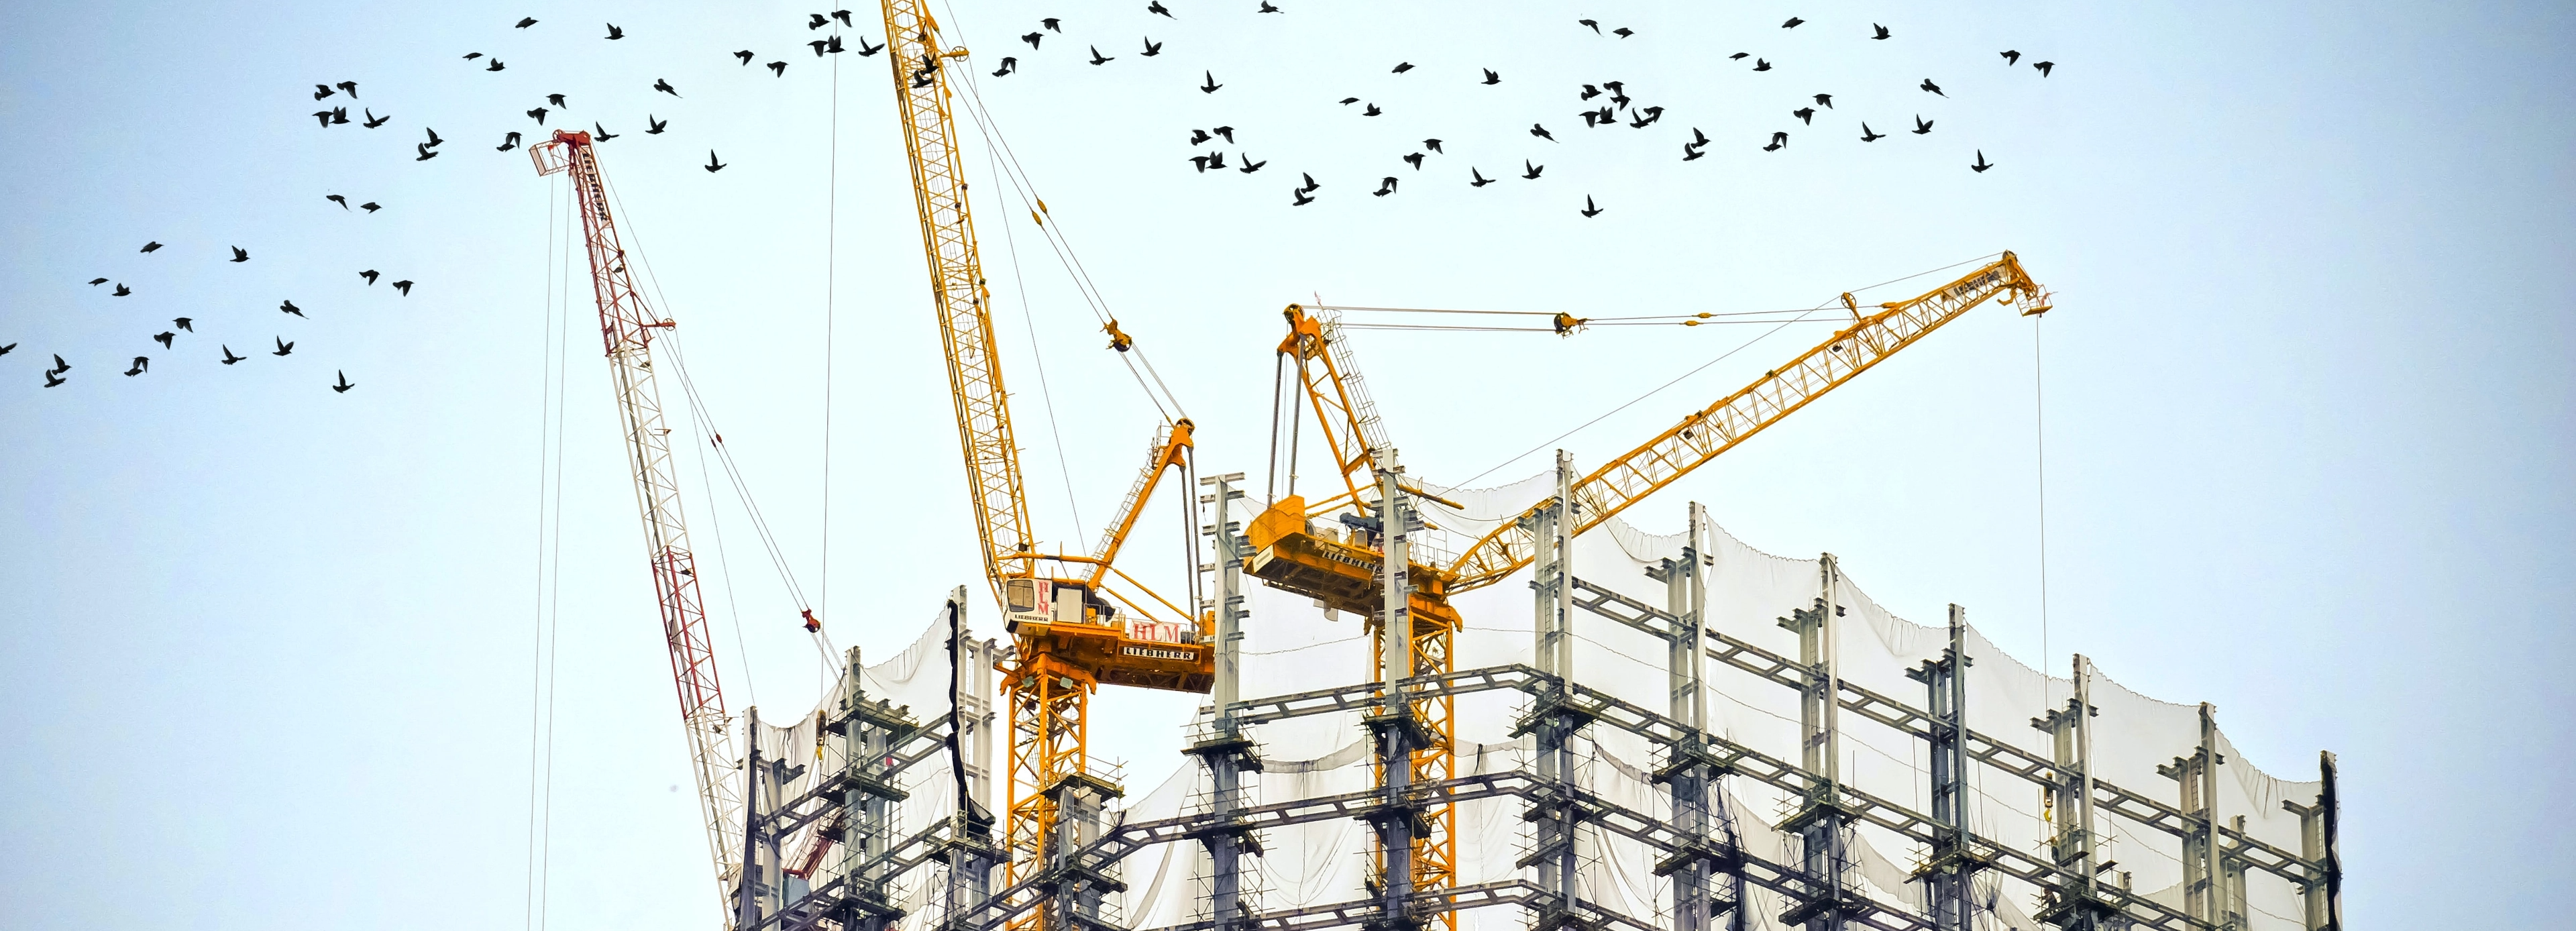 Photographie d'un chantier de construction d'un immeuble avec un vol d'oiseaux migrateurs